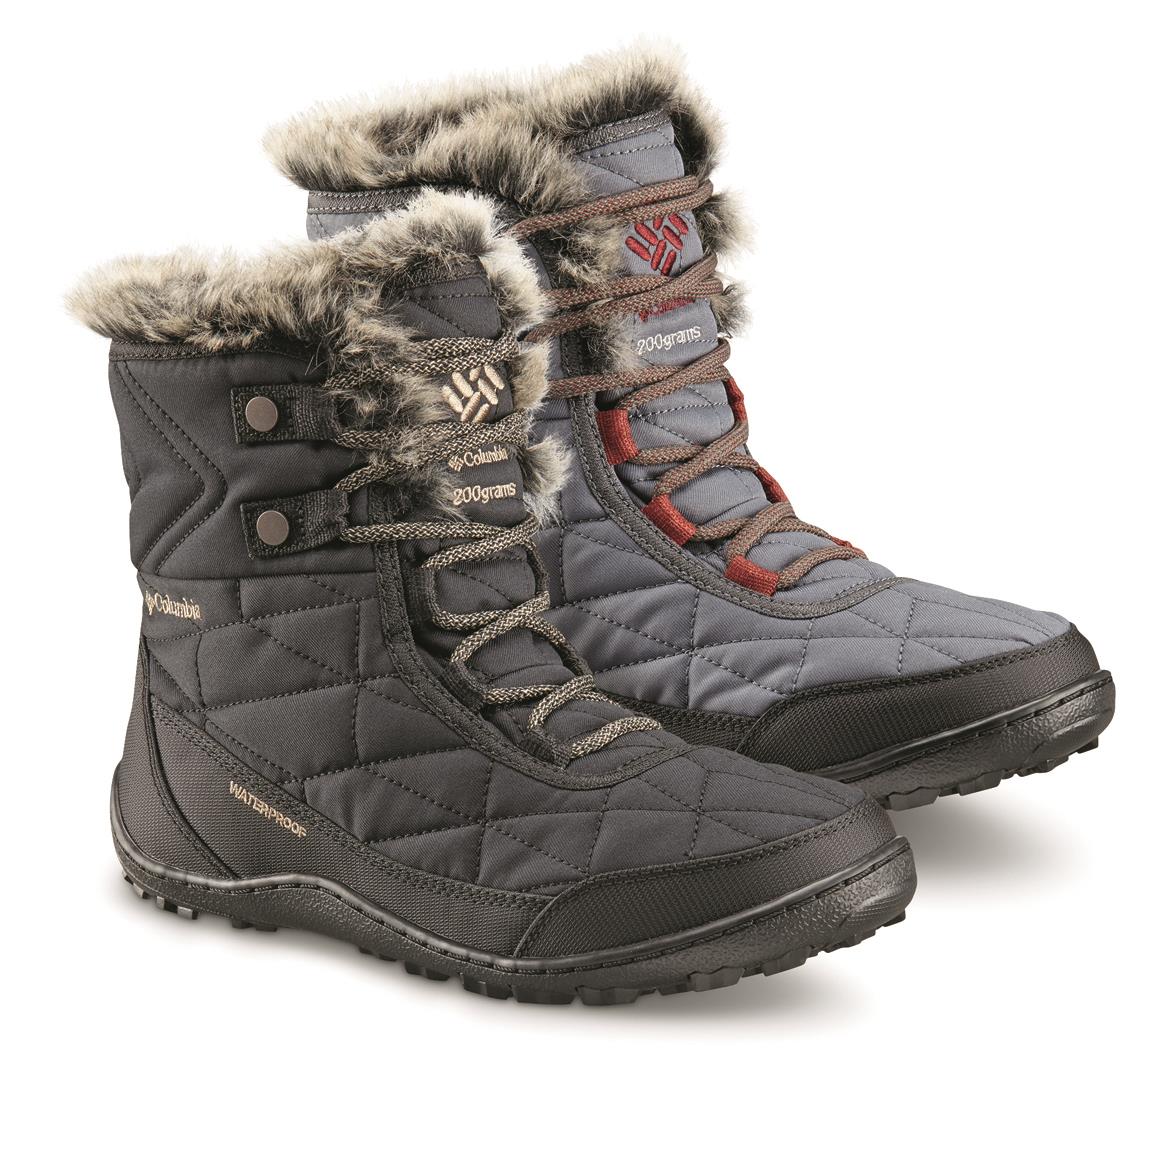 Columbia Women's Minx Shorty III Waterproof Winter Boots, 200 Gram ...